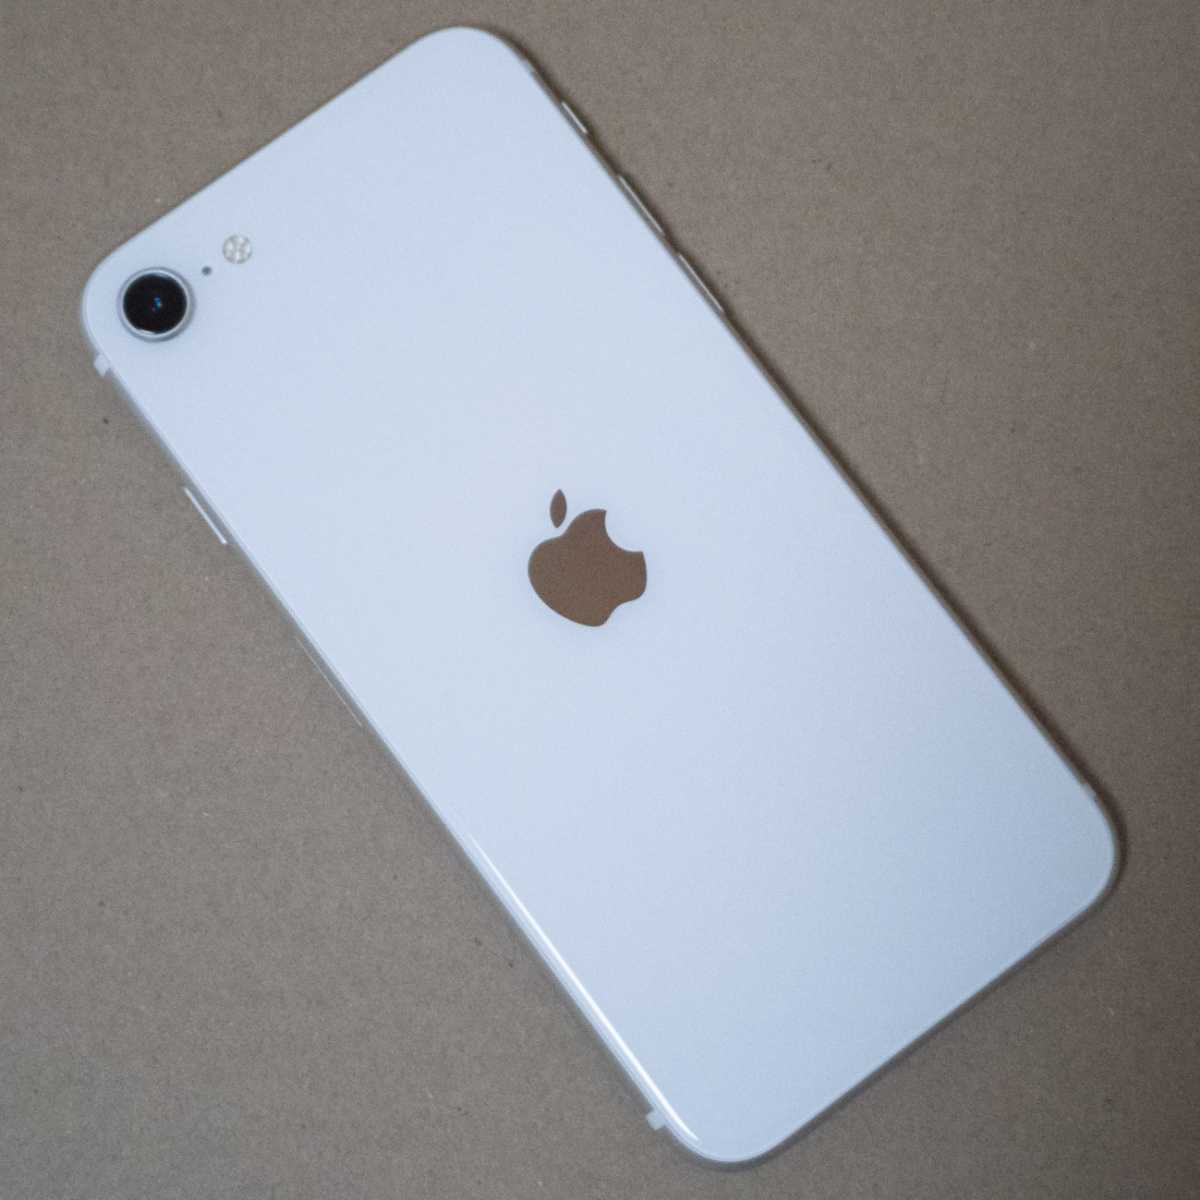 iPhone SE 第2世代 64GB SE2 SIMロック解除済み ホワイト 白 WHITE Apple